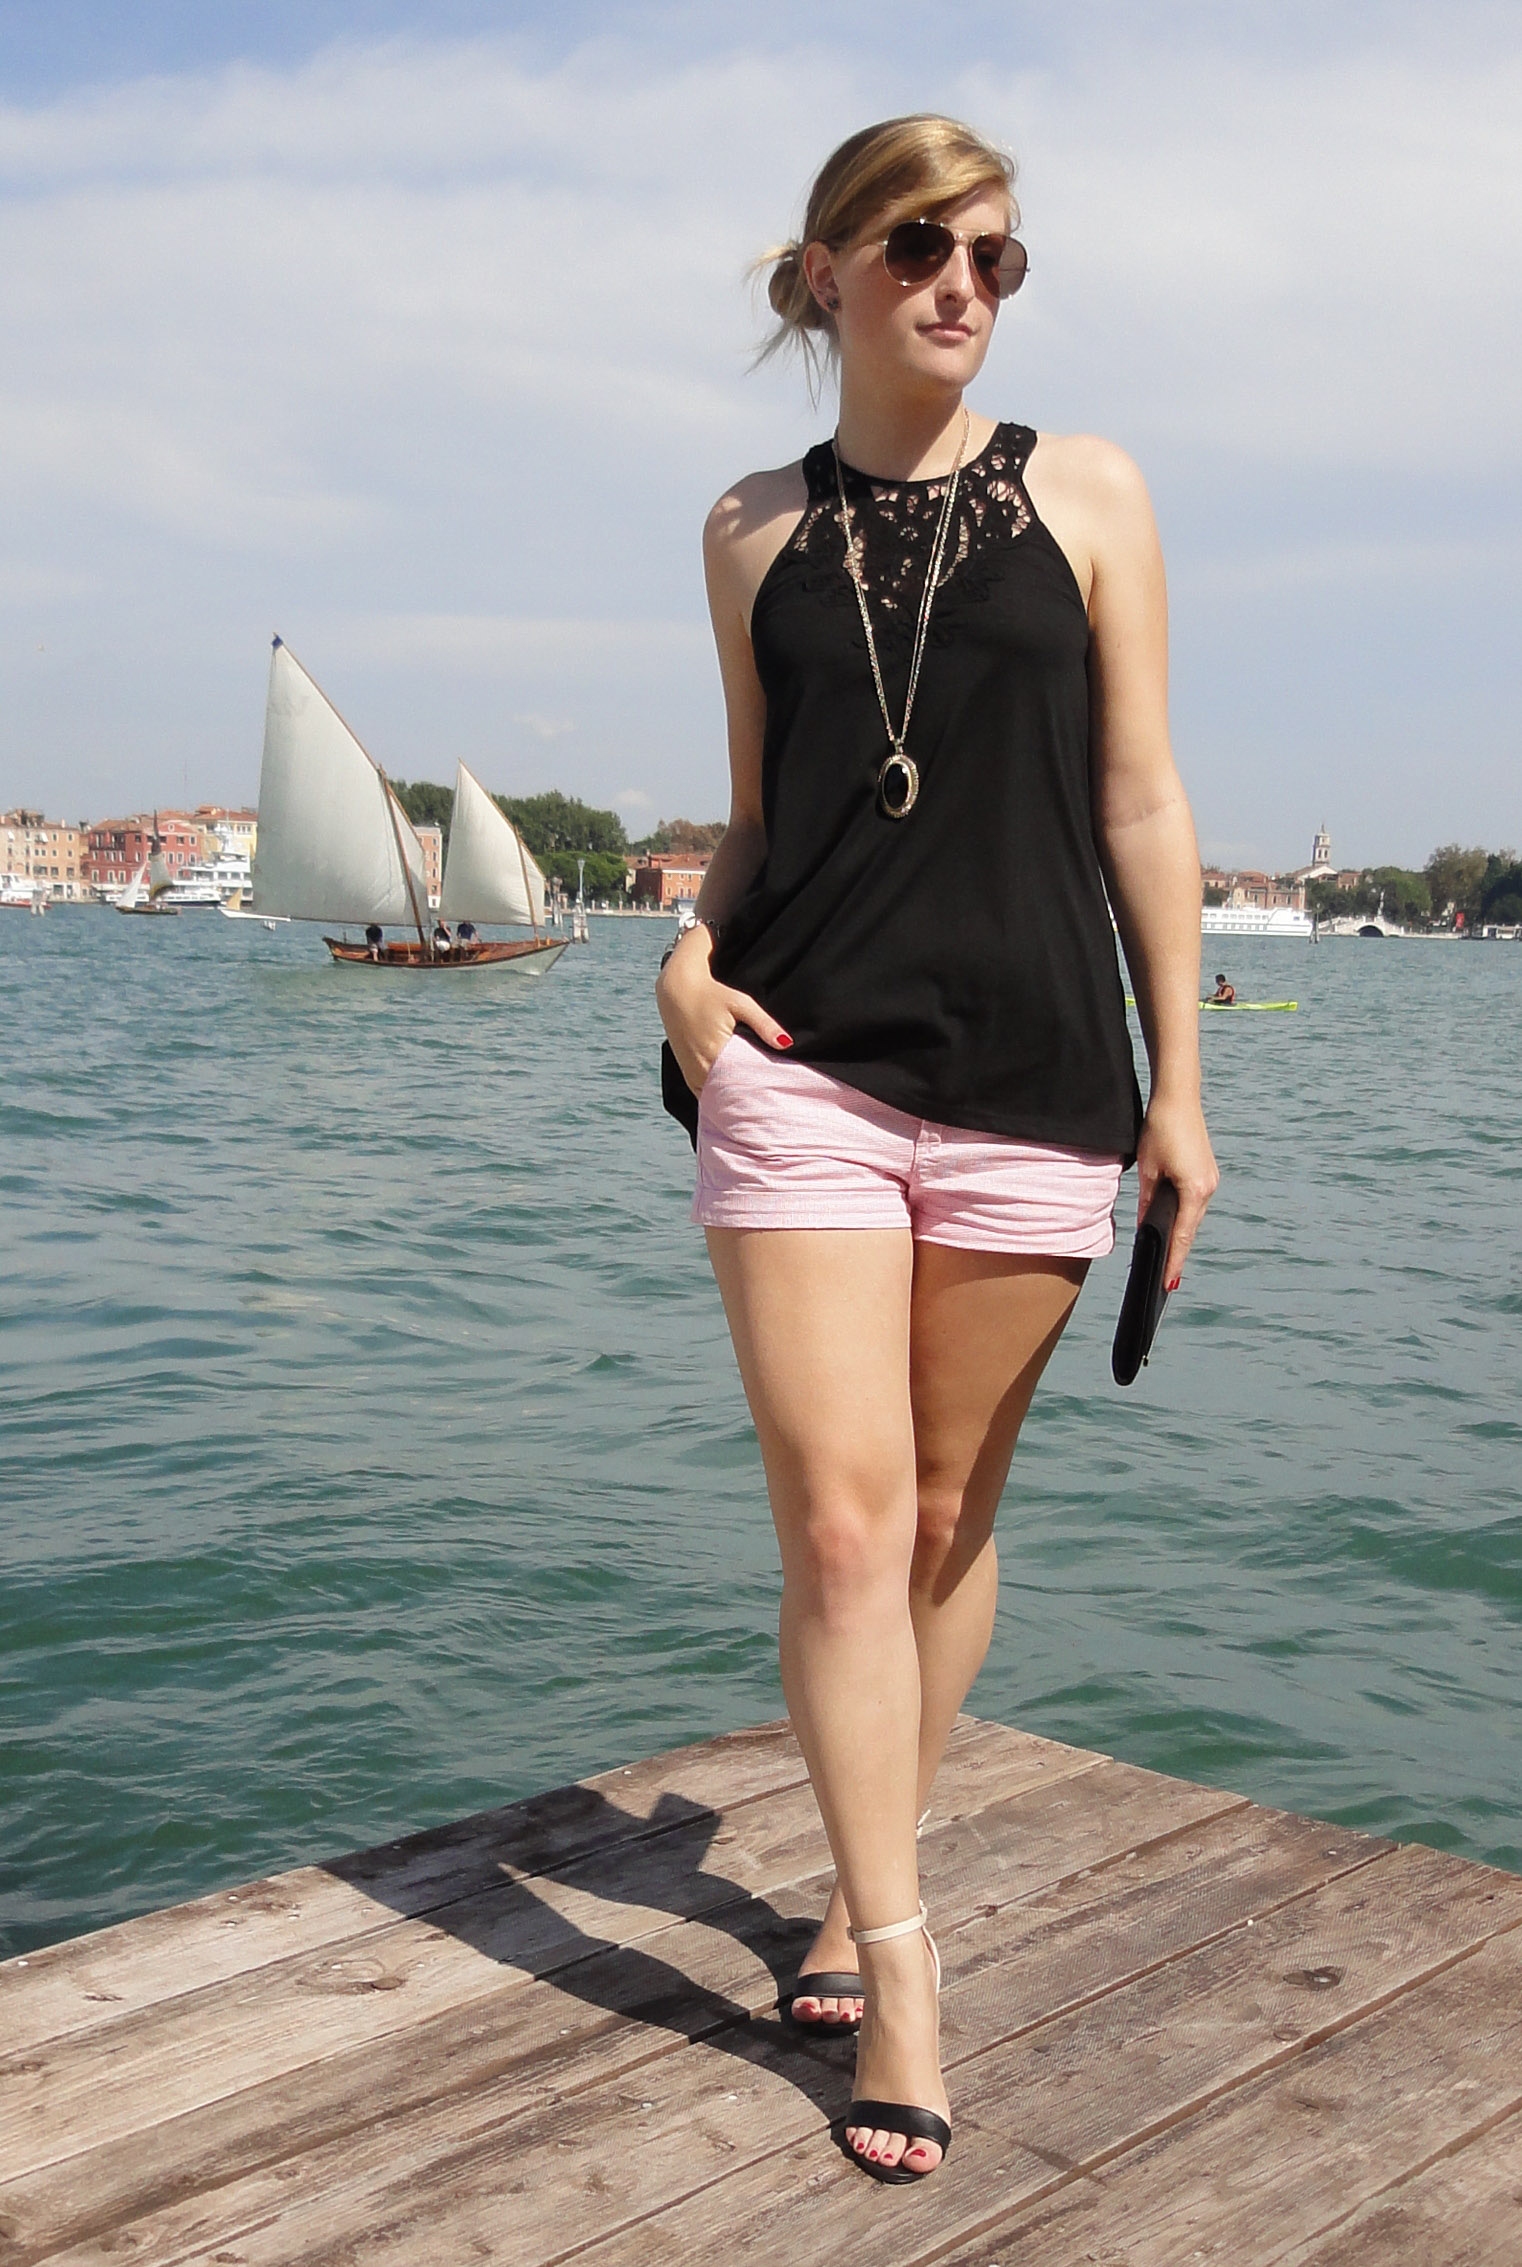 Venice seaside Venedig Sightseeing Outfit Sommeroutfit gestreifte Hotpants kombinieren Highheels Modeblog Italien 3